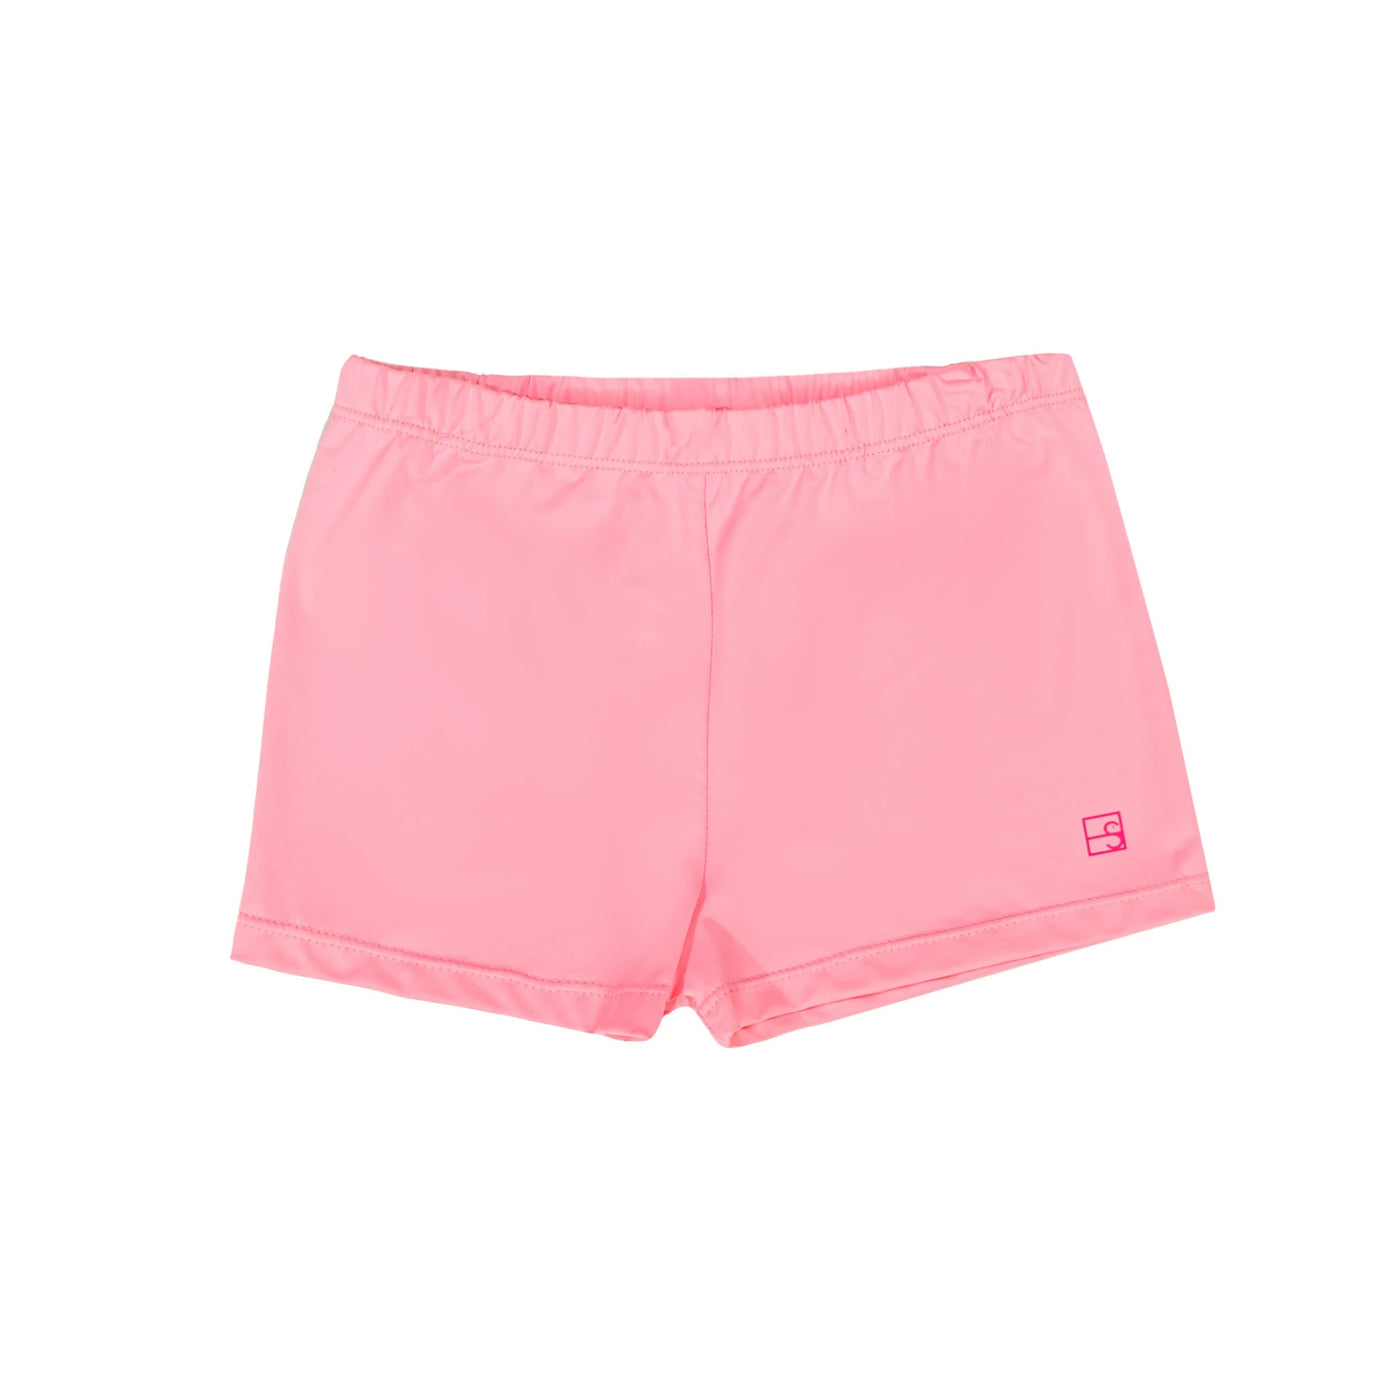 Pink Athleisure Carly Cartwheel Shorts